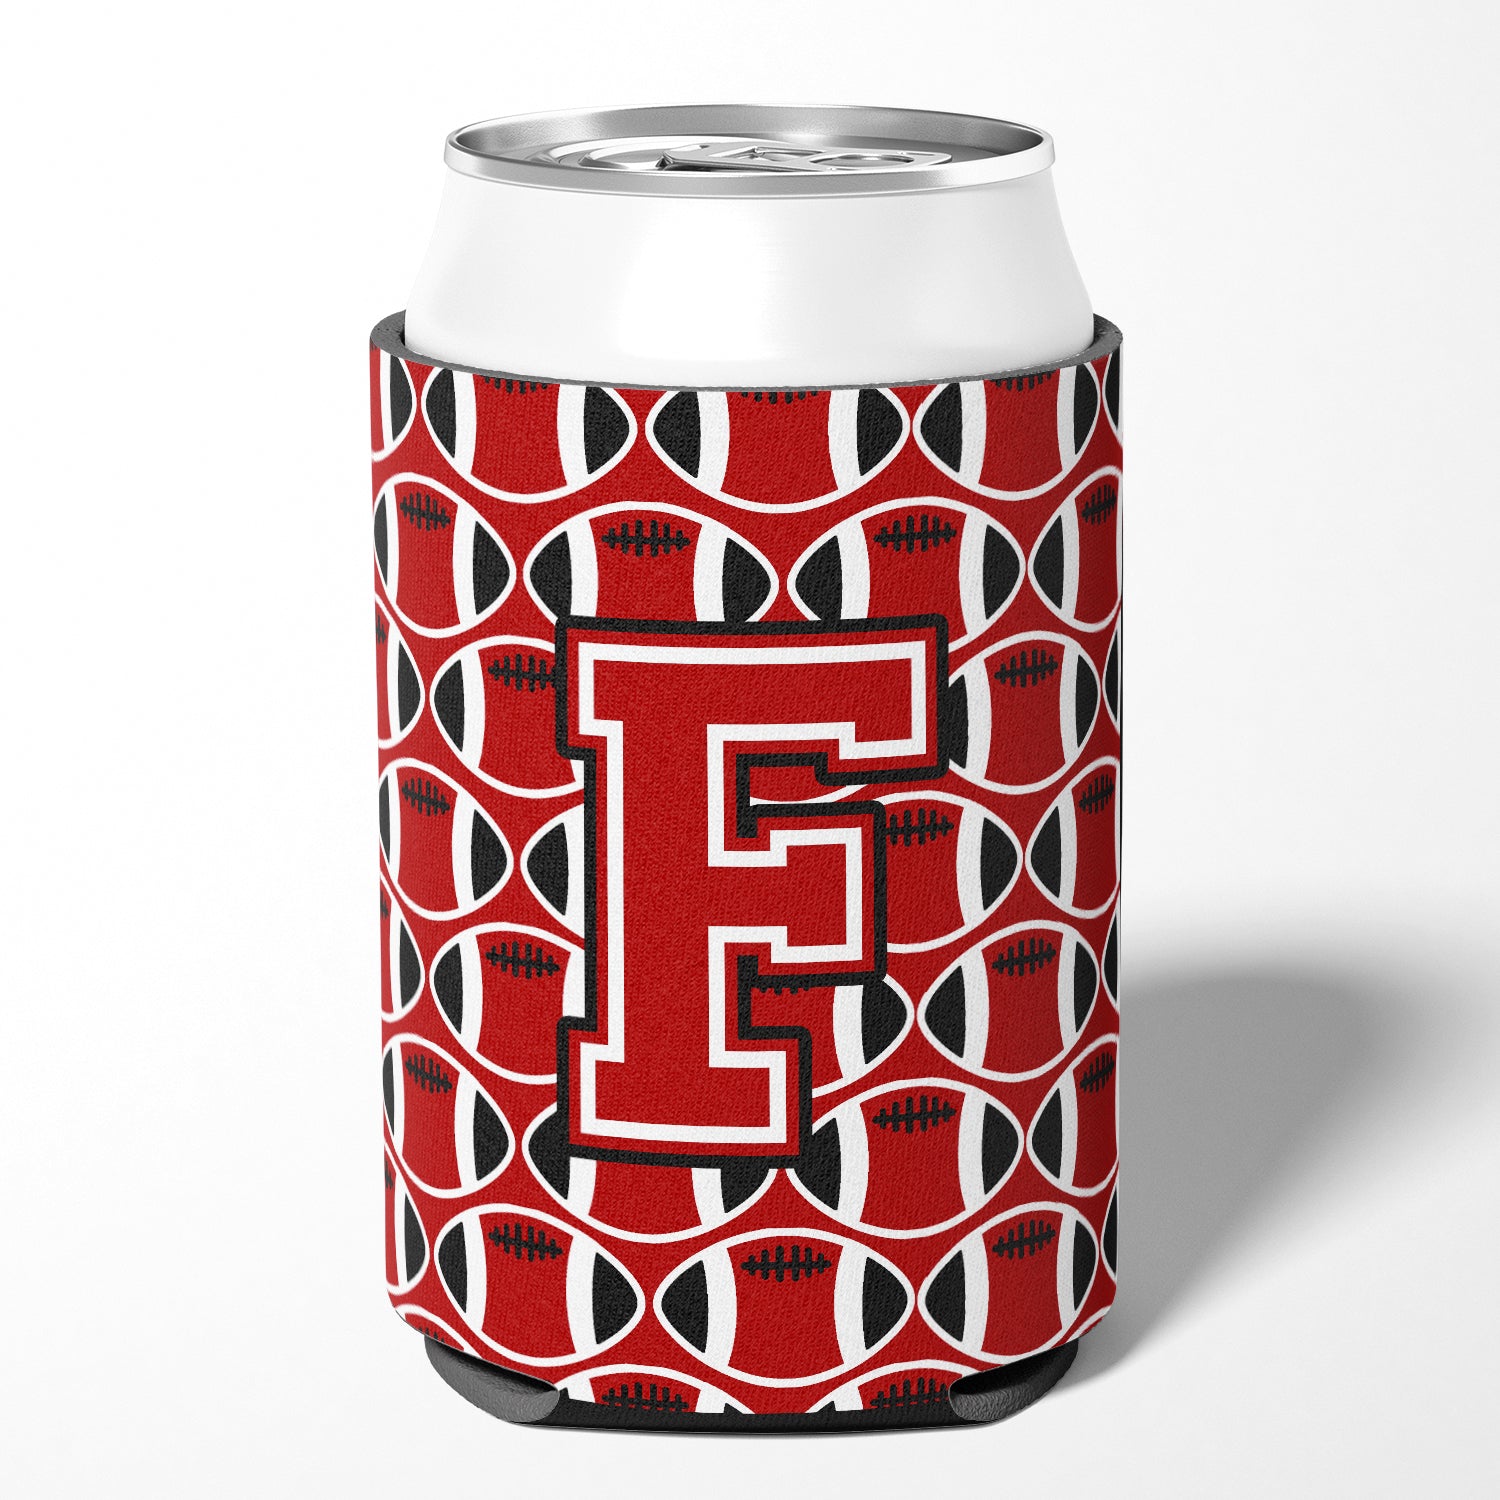 Lettre F Football rouge, noir et blanc porte-canette ou porte-bouteille CJ1073-FCC